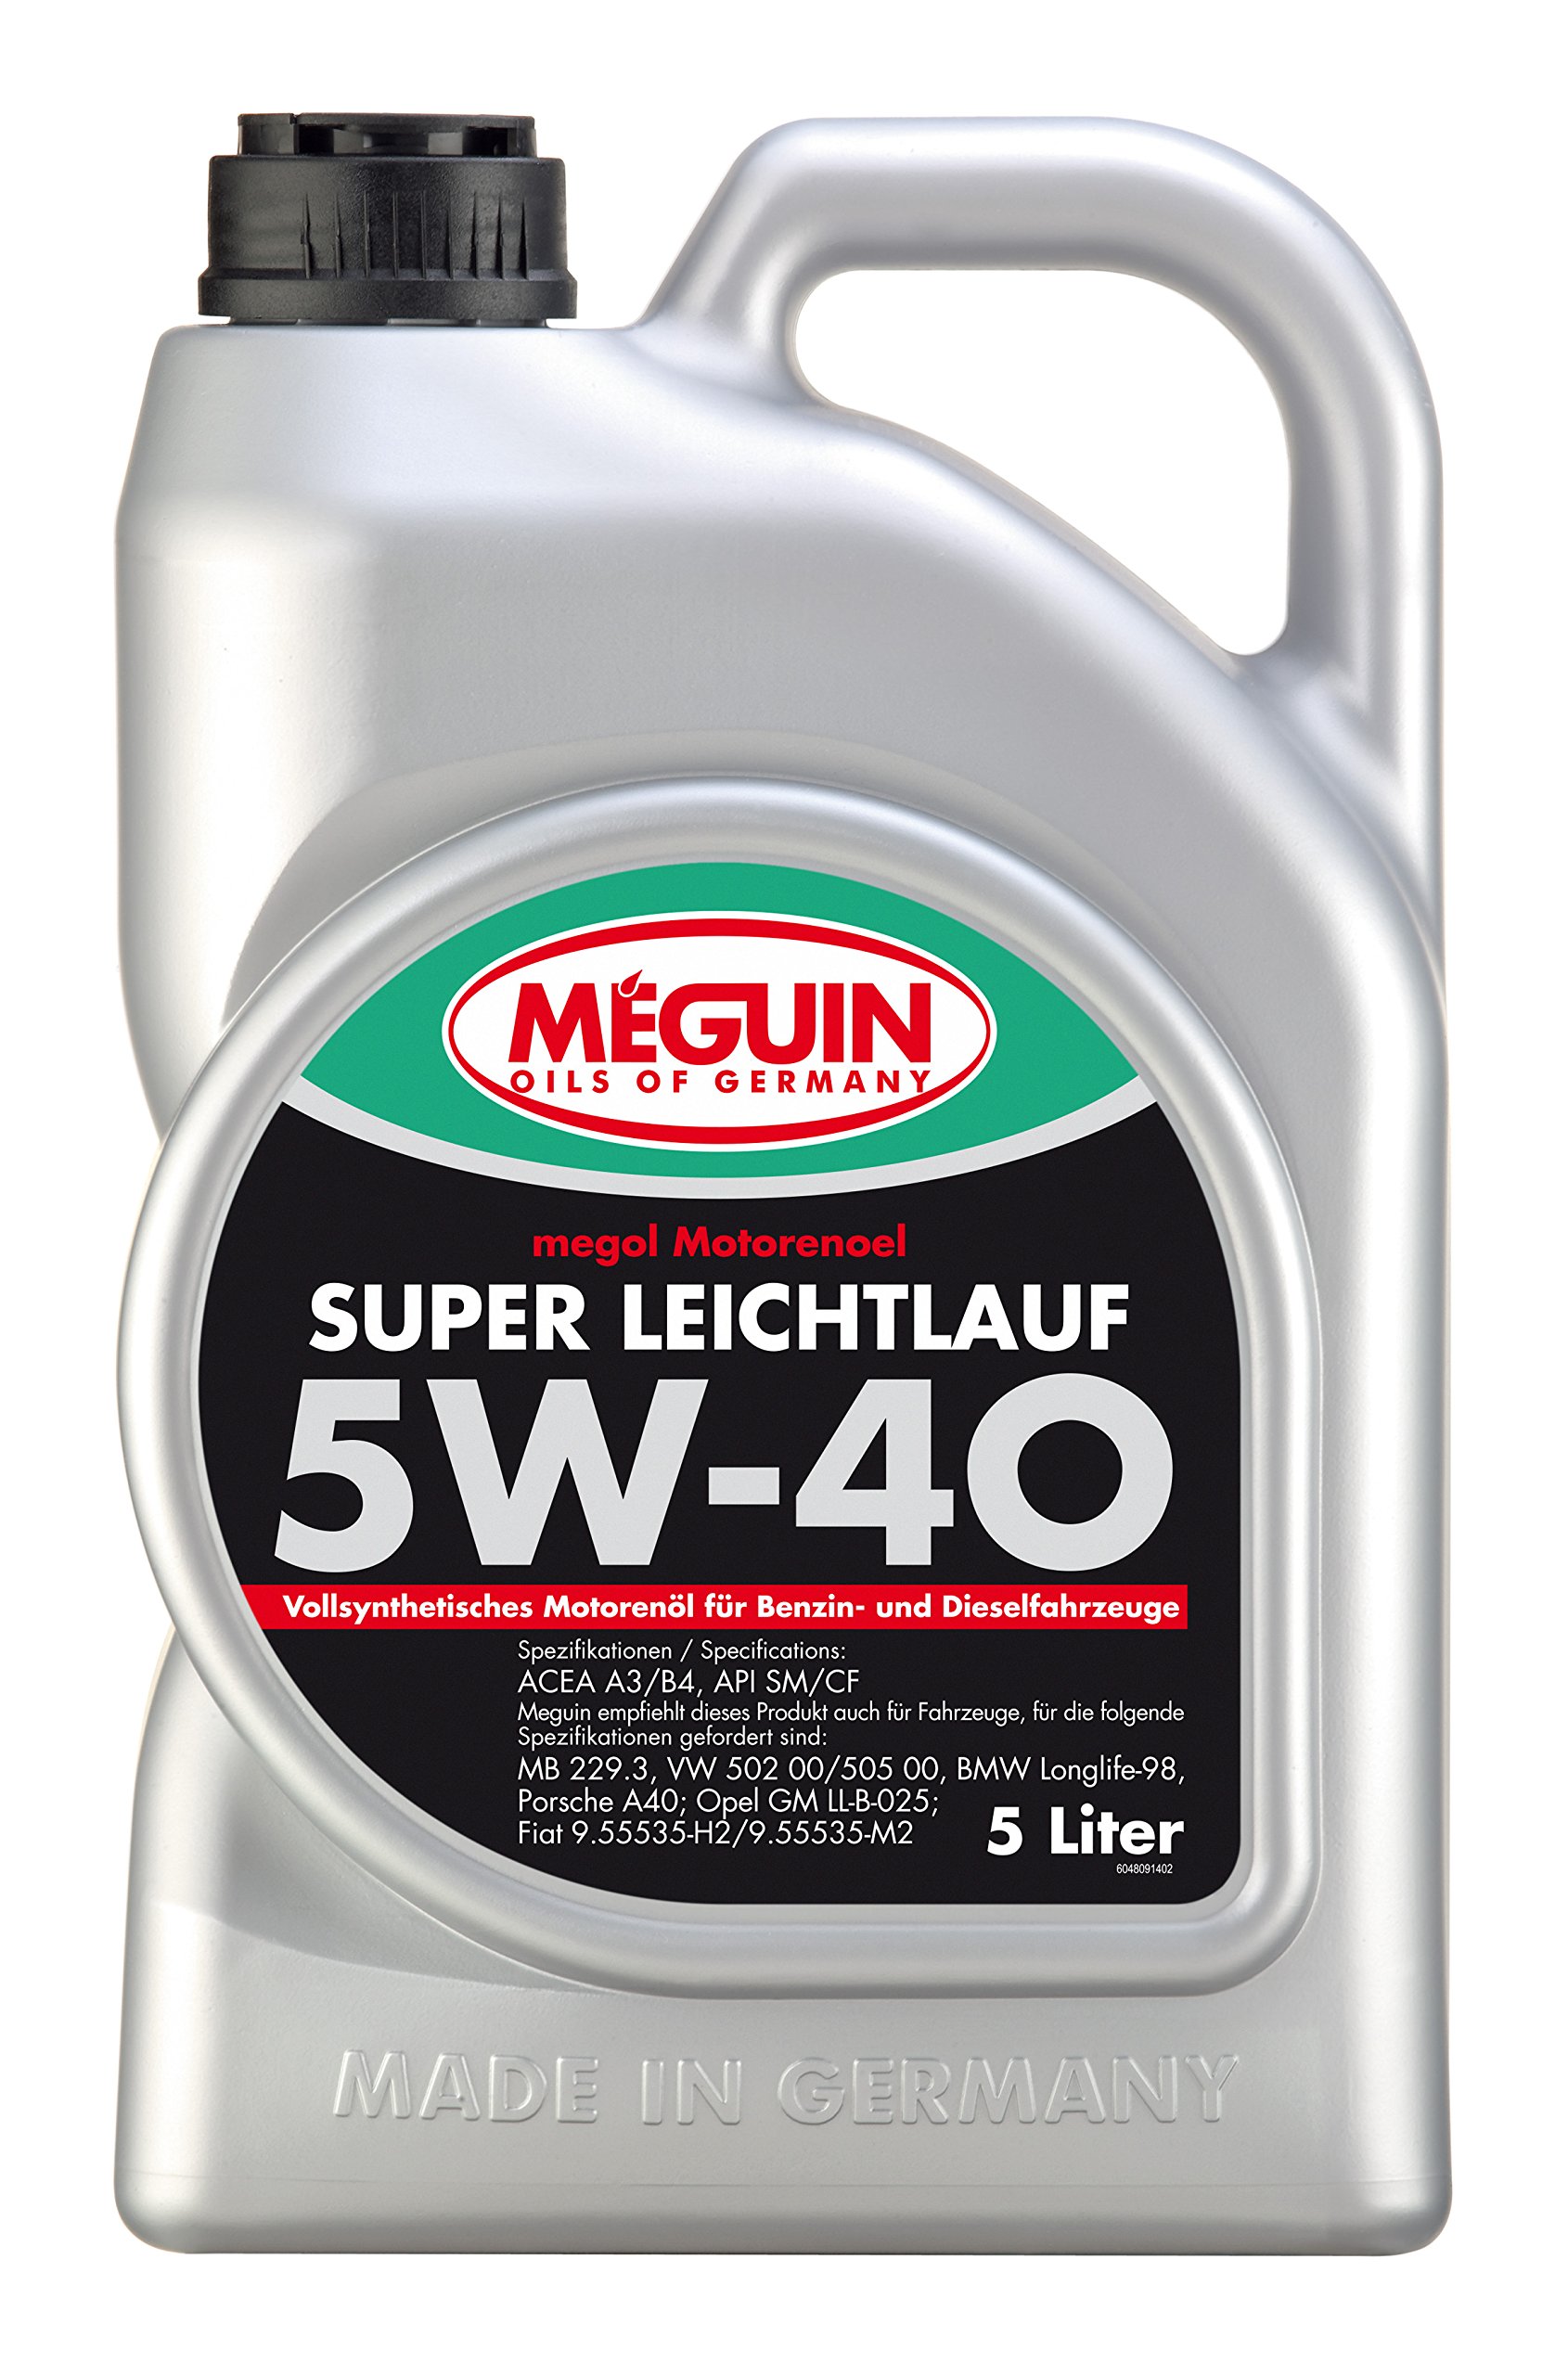 Meguin Megol Super Leichtlauf SAE 5W-40 vollsynthetisch | 5 L | vollsynthetisches Motoröl | Art.-Nr.: 4809 von Meguin